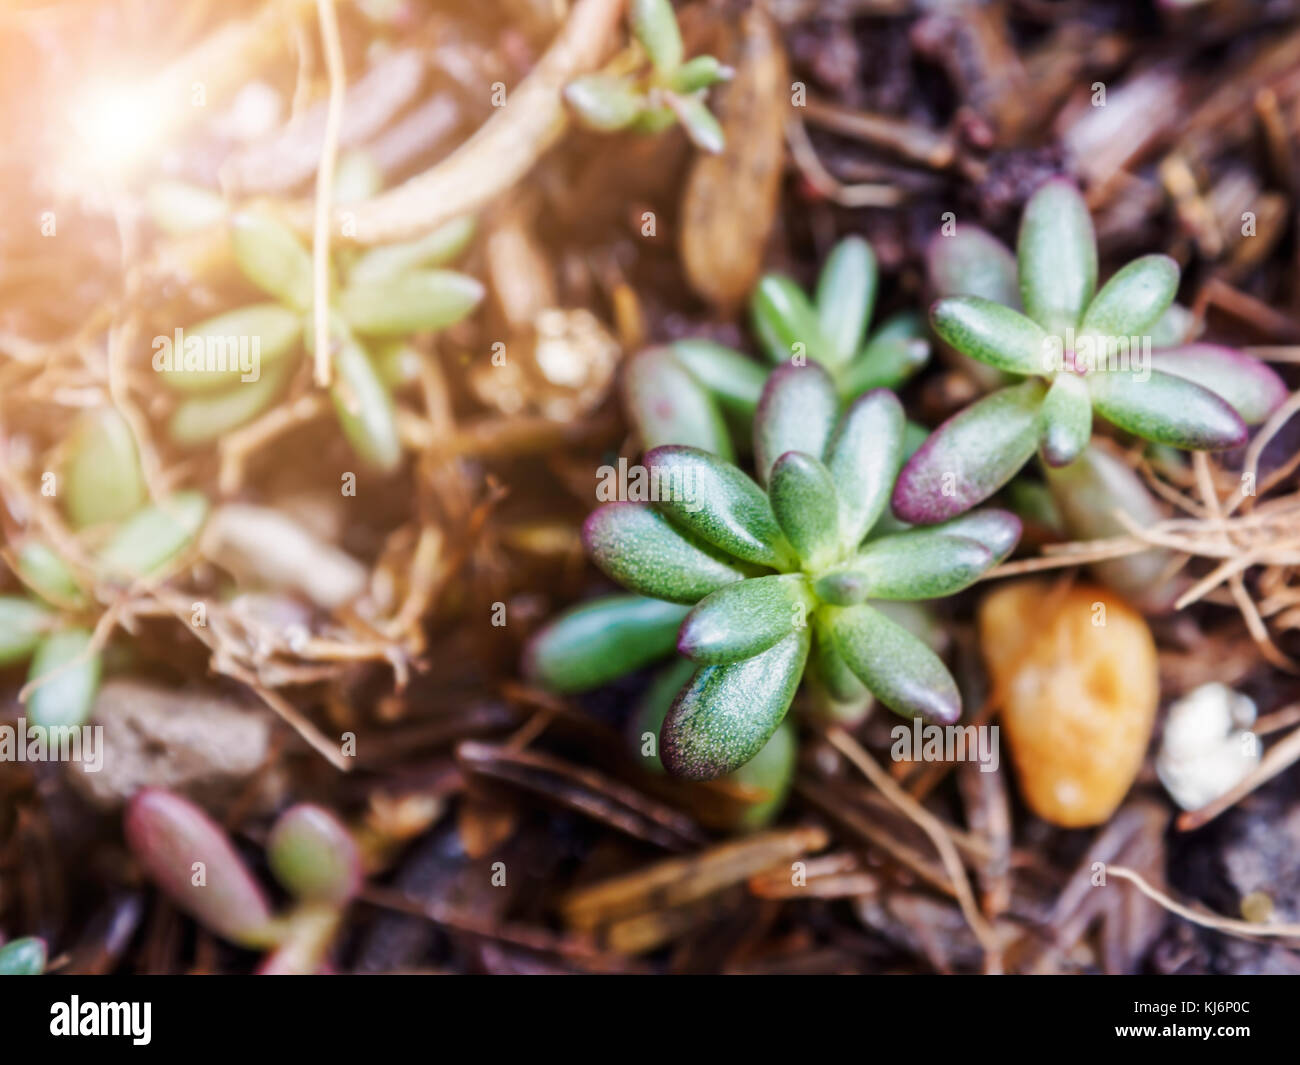 Succulent plant. Sedum rubrotinctum. Stock Photo